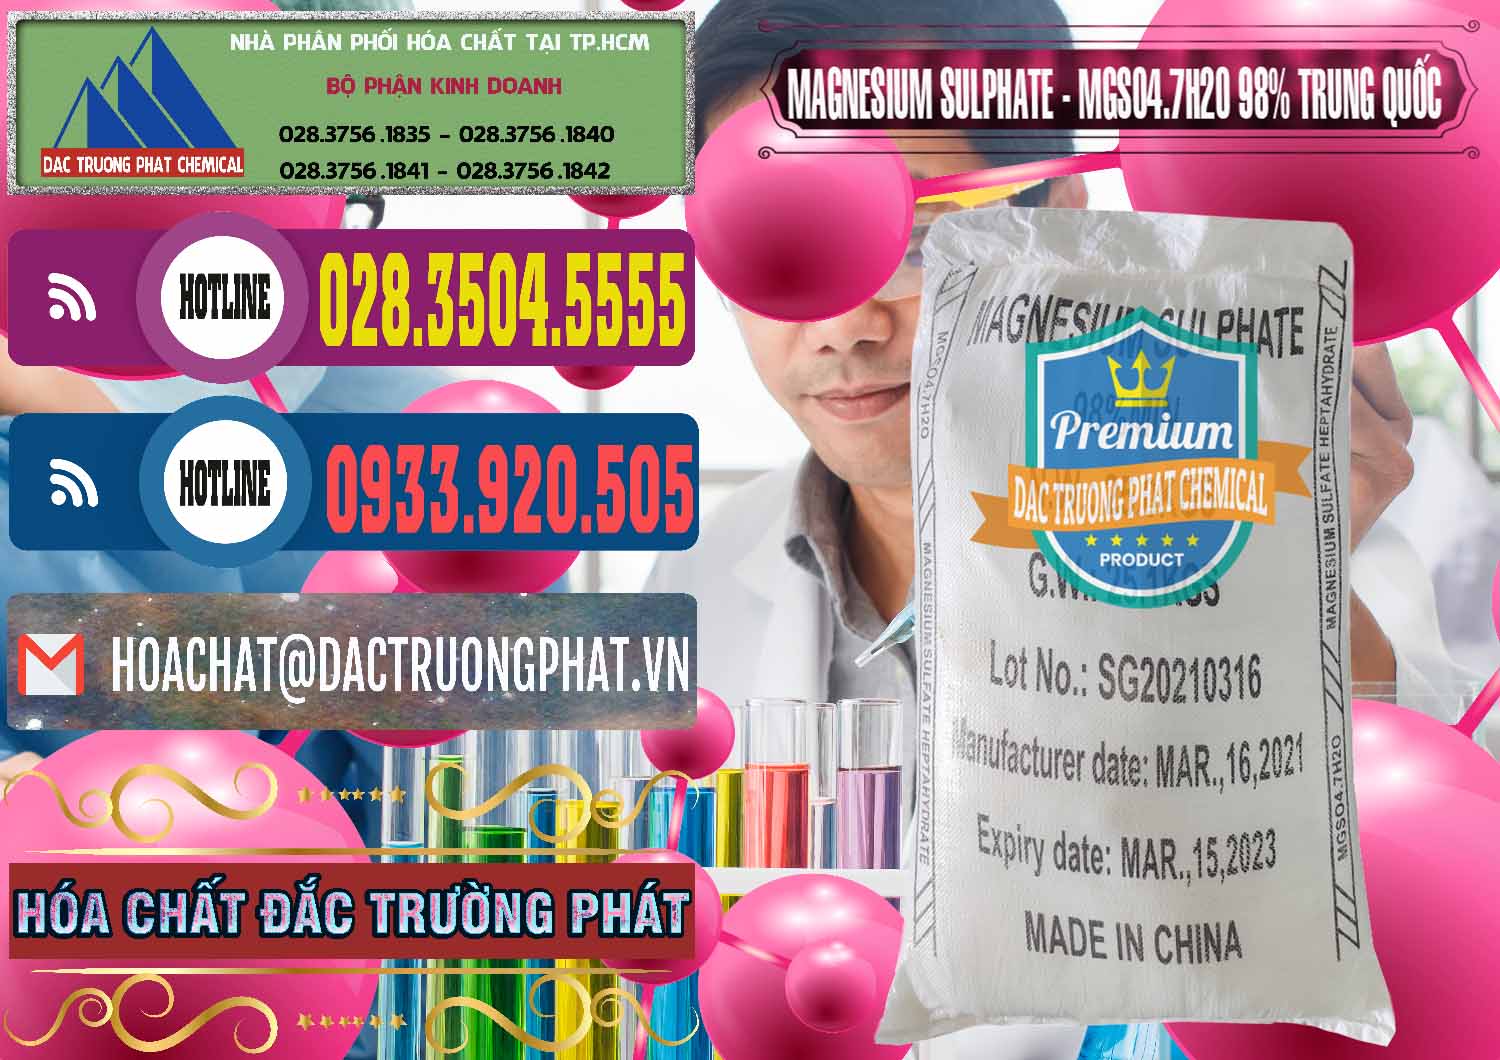 Nơi kinh doanh _ bán MGSO4.7H2O – Magnesium Sulphate 98% Trung Quốc China - 0229 - Cty cung cấp và phân phối hóa chất tại TP.HCM - muabanhoachat.com.vn